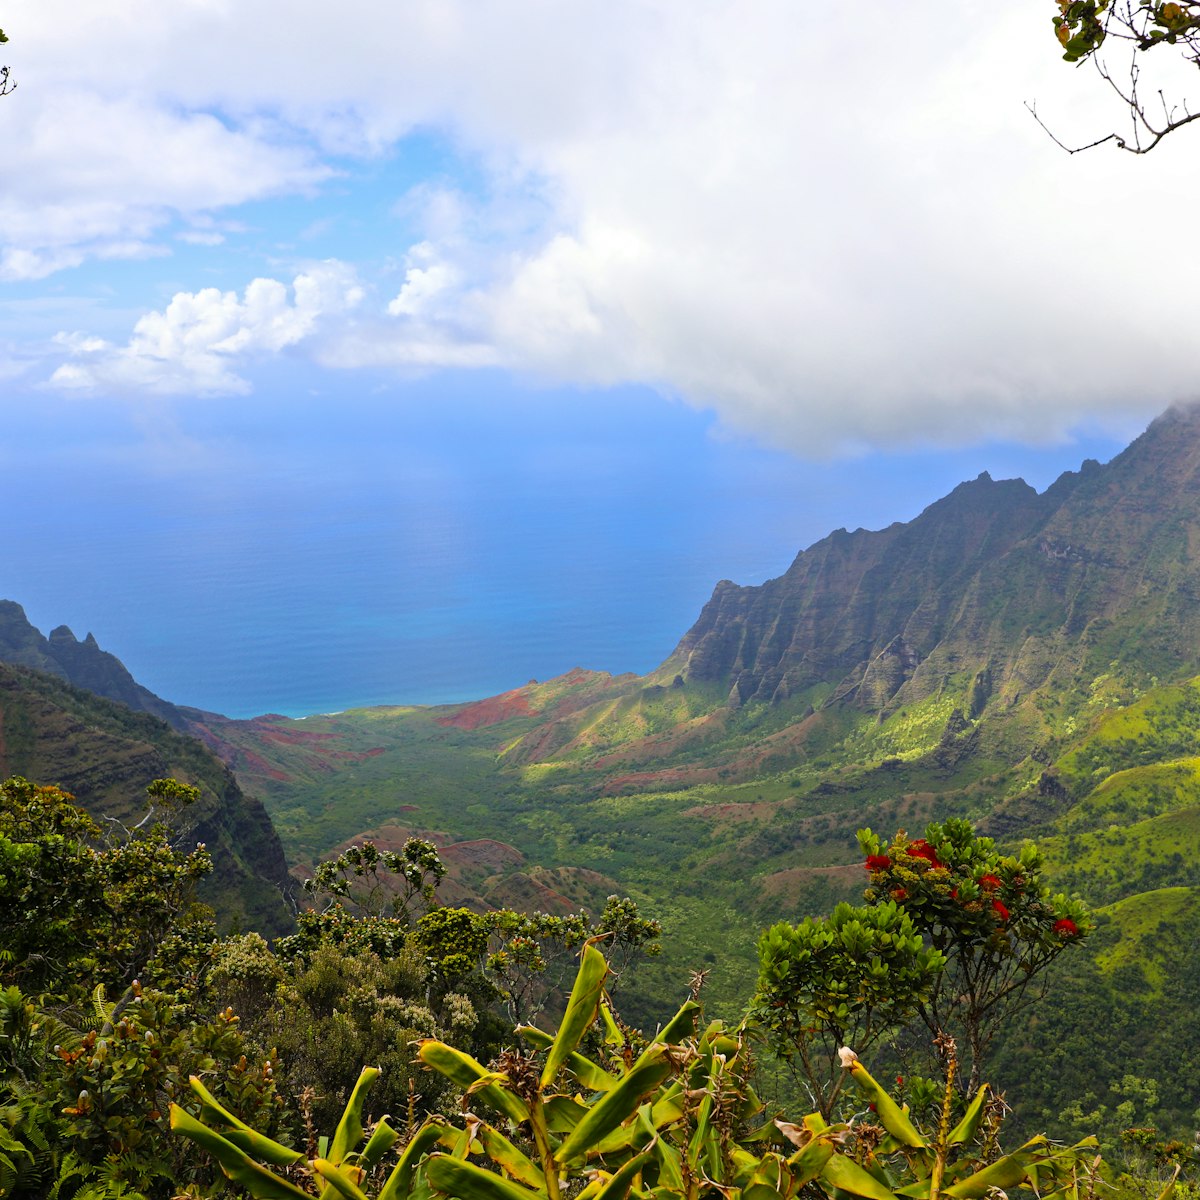 View of the Napali Coast, Pu'u O Kila overlook, Waimea Canyon State Park, Koke'e State Park, Kauai, Hawaii